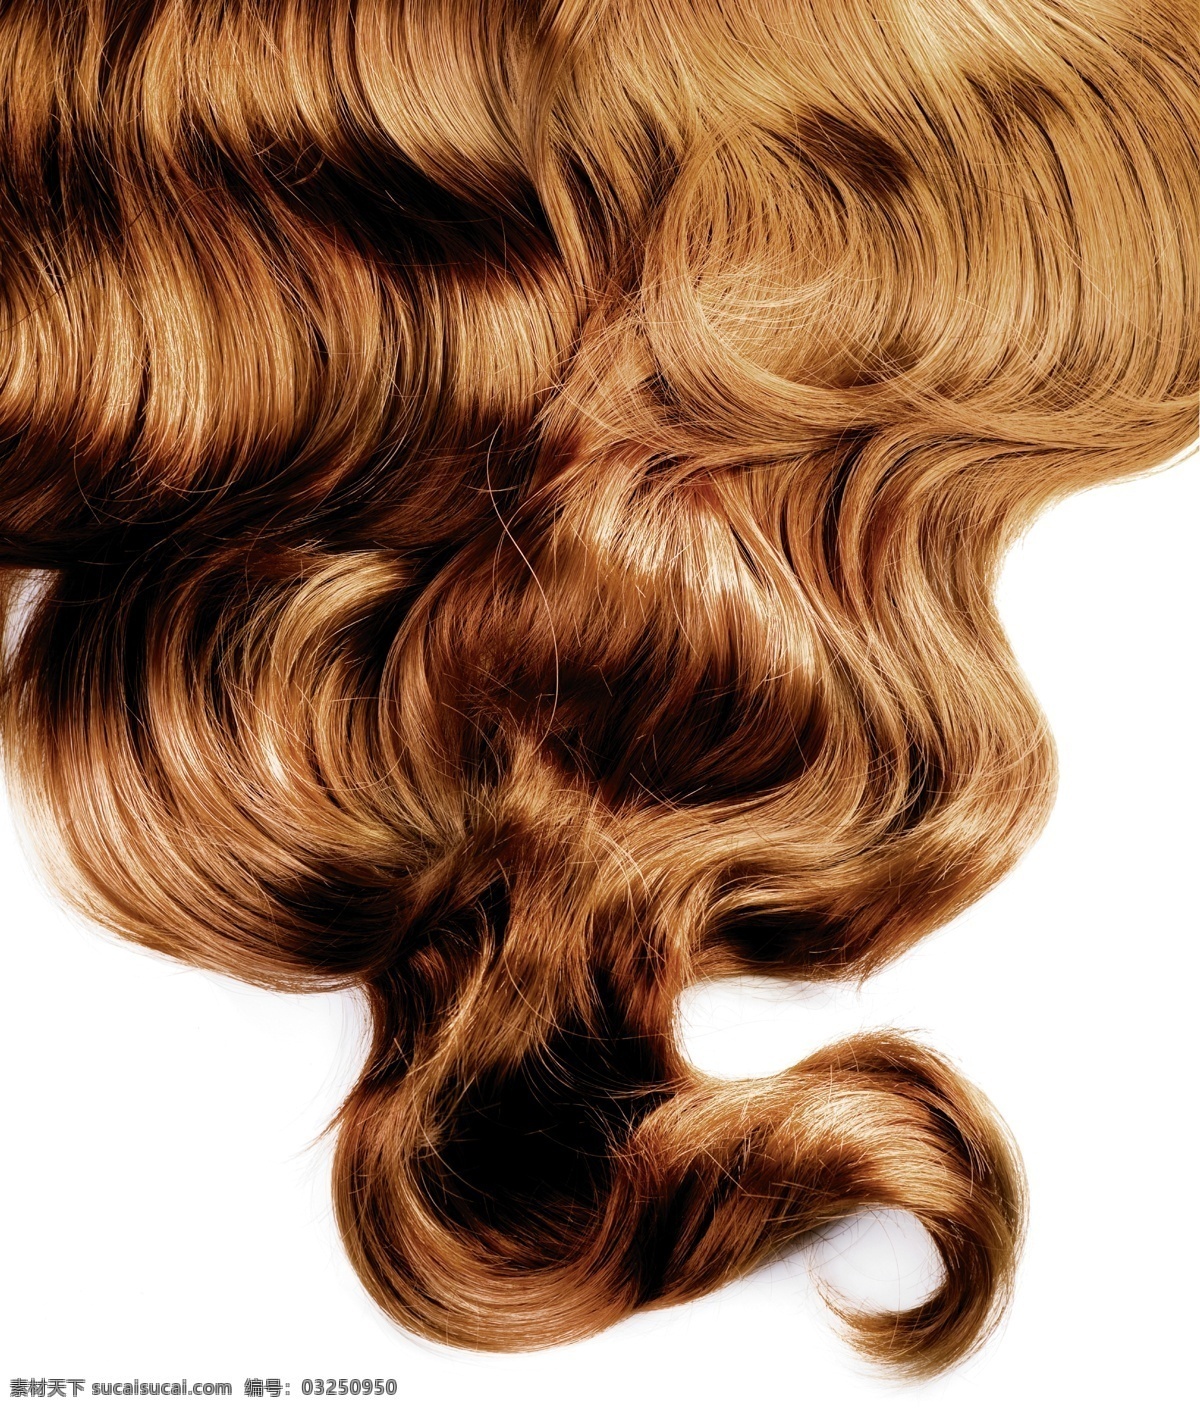 棕色 卷发 棕色卷发摄影 头发 发丝 头发纹理 柔顺的头发 女性头发 头发背景 背景底纹 人体器官图 人物图片